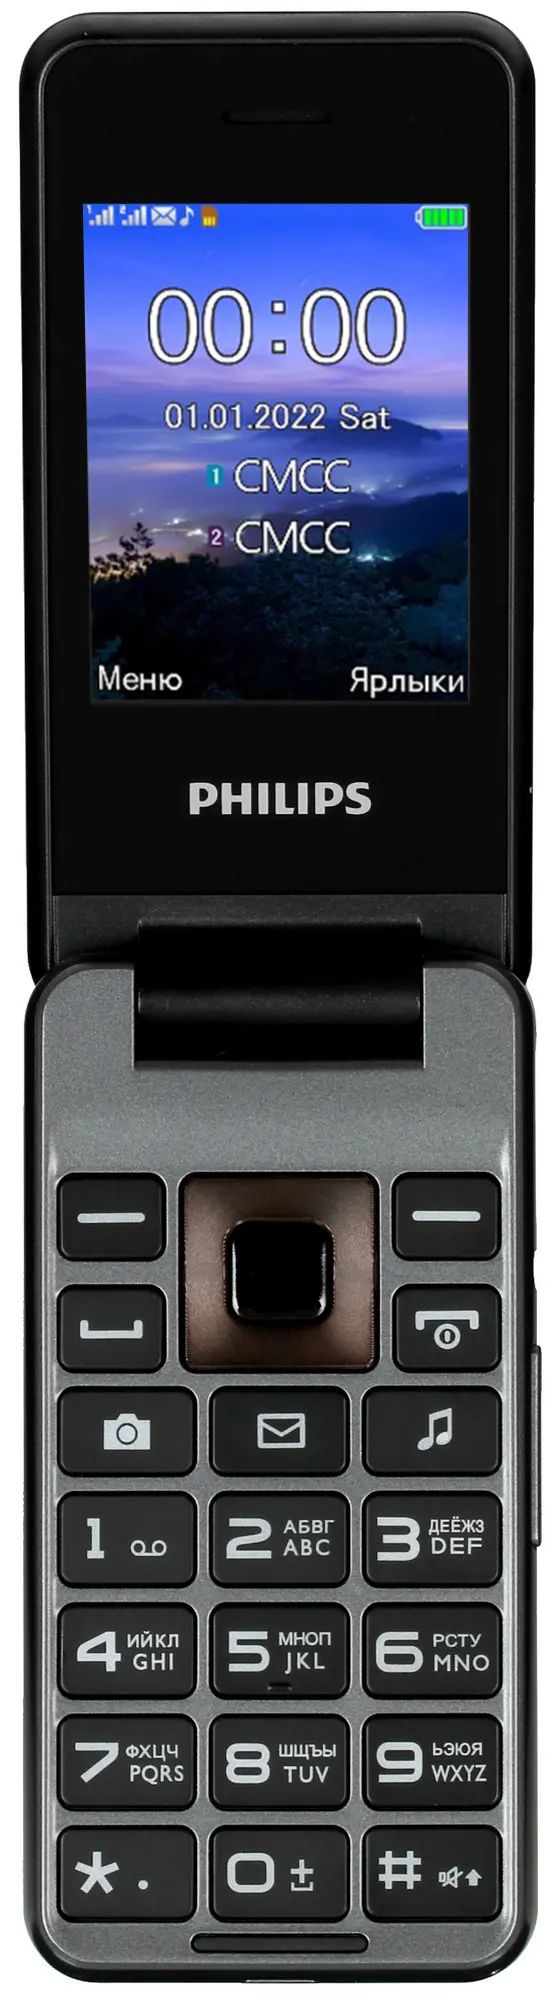 Сотовый телефон Philips Xenium E2601, темно-серый, купить в Москве, цены в интернет-магазинах на Мегамаркет